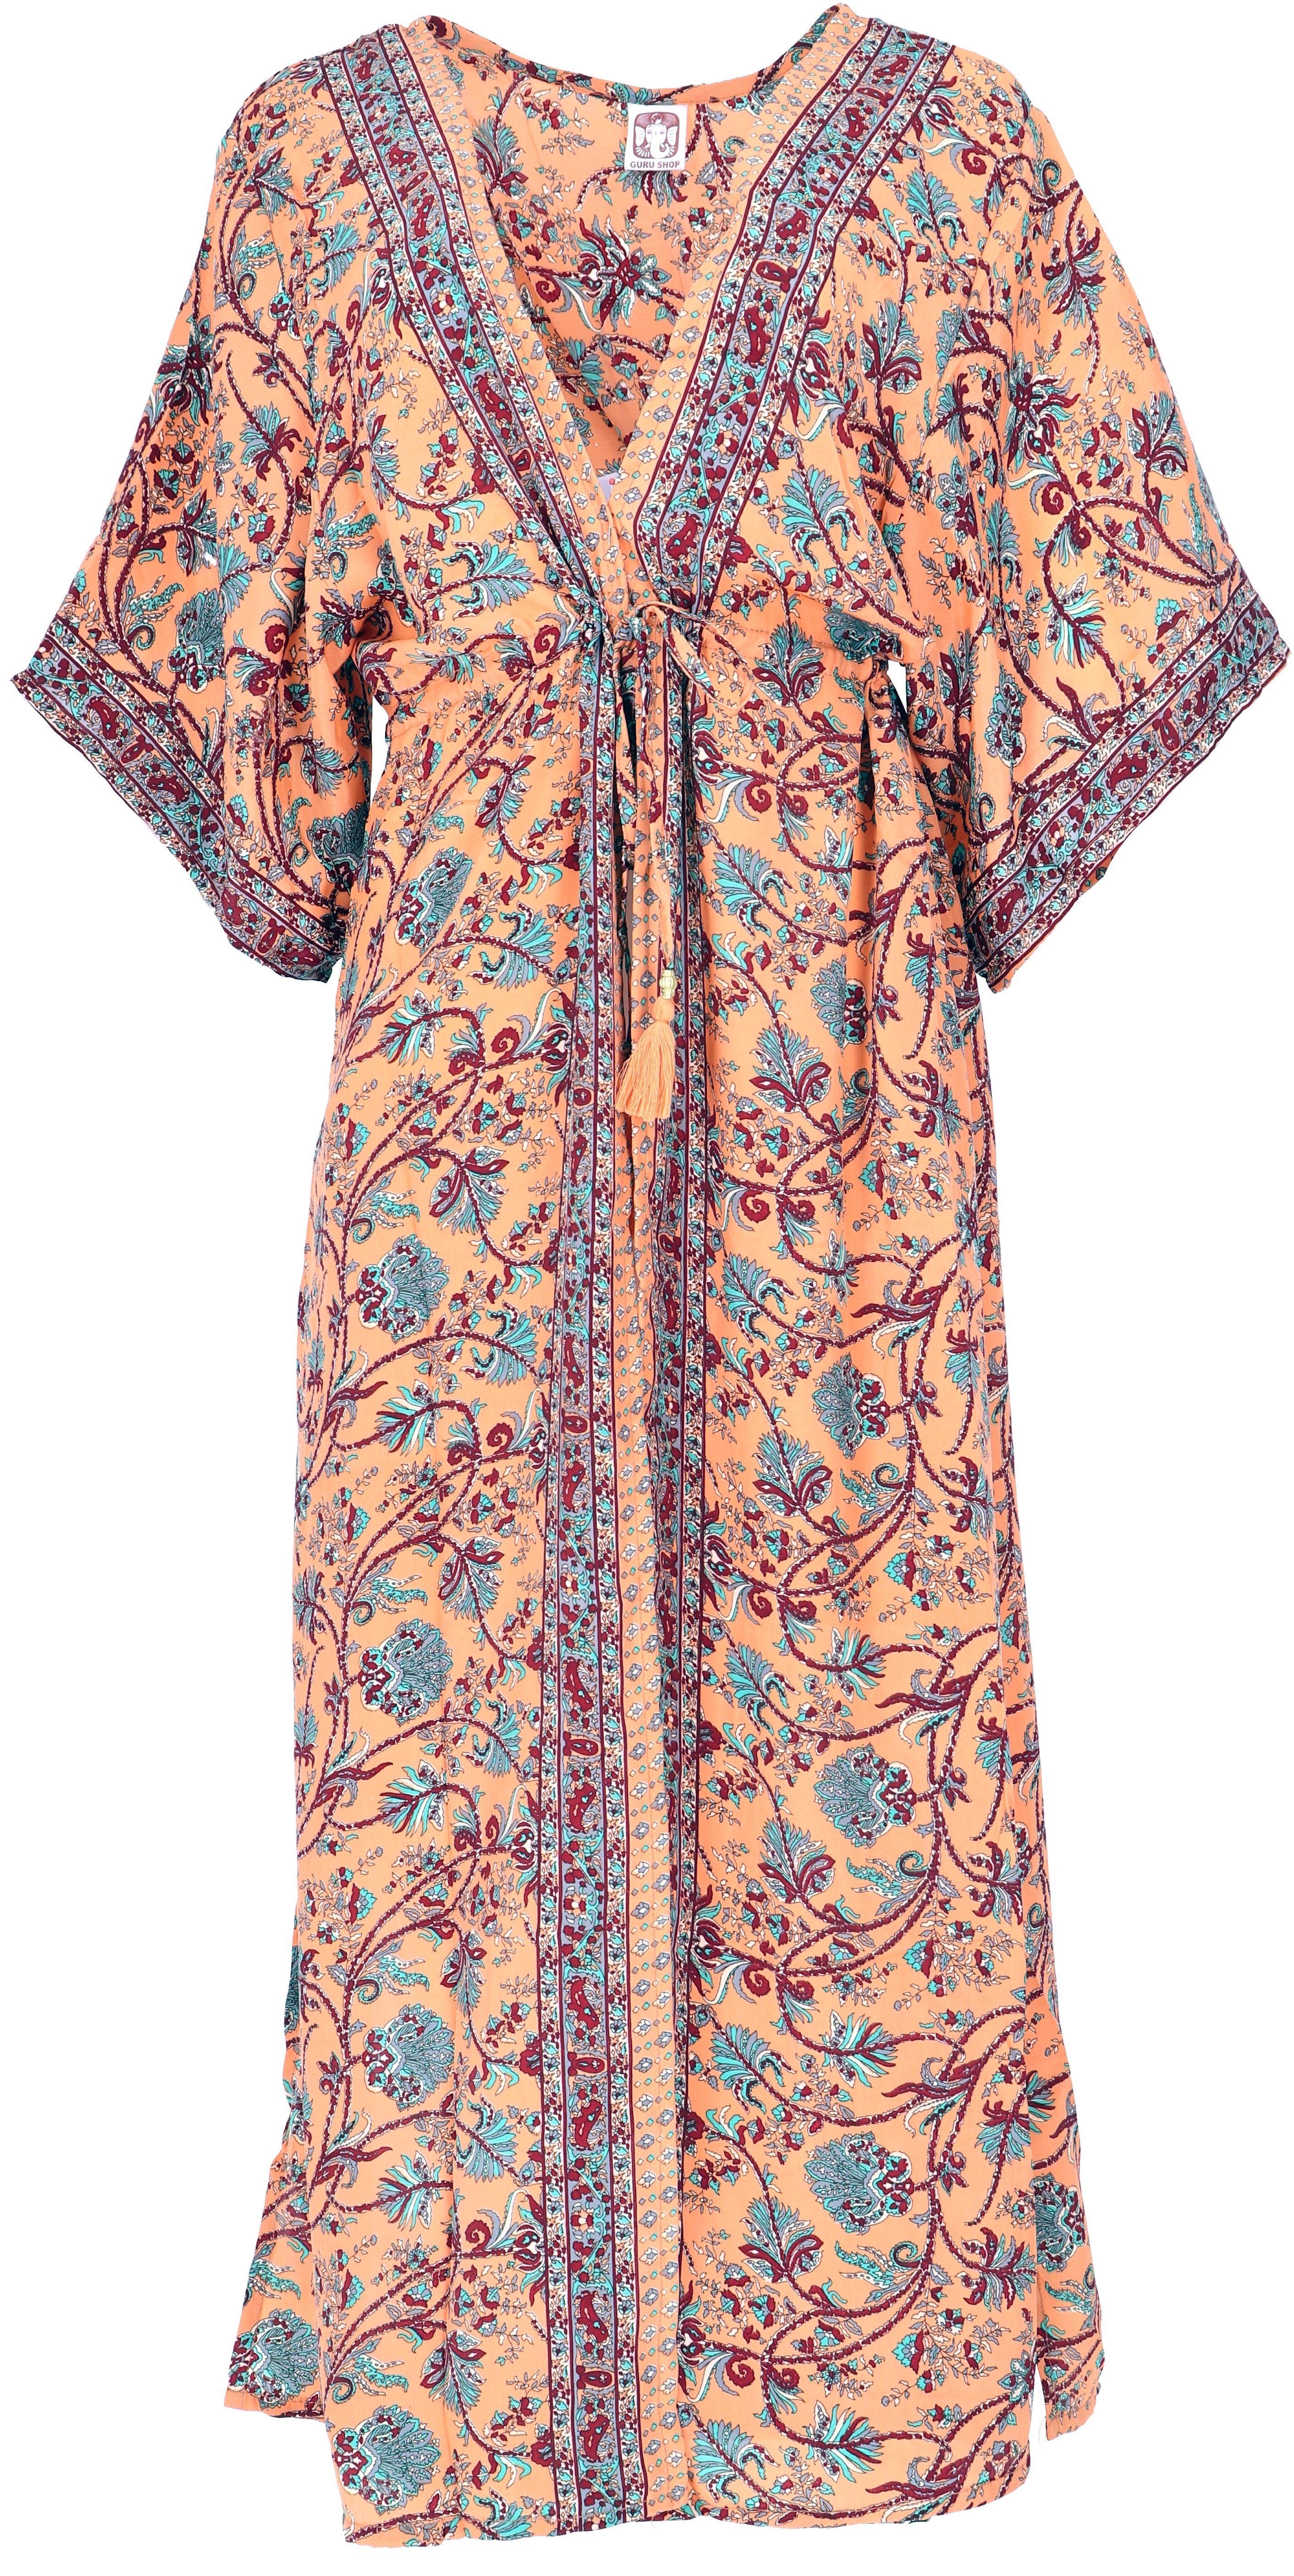 Guru-Shop Kimono Kimonokleid, seidig glänzender Boho Kimono,.., alternative Bekleidung apricot